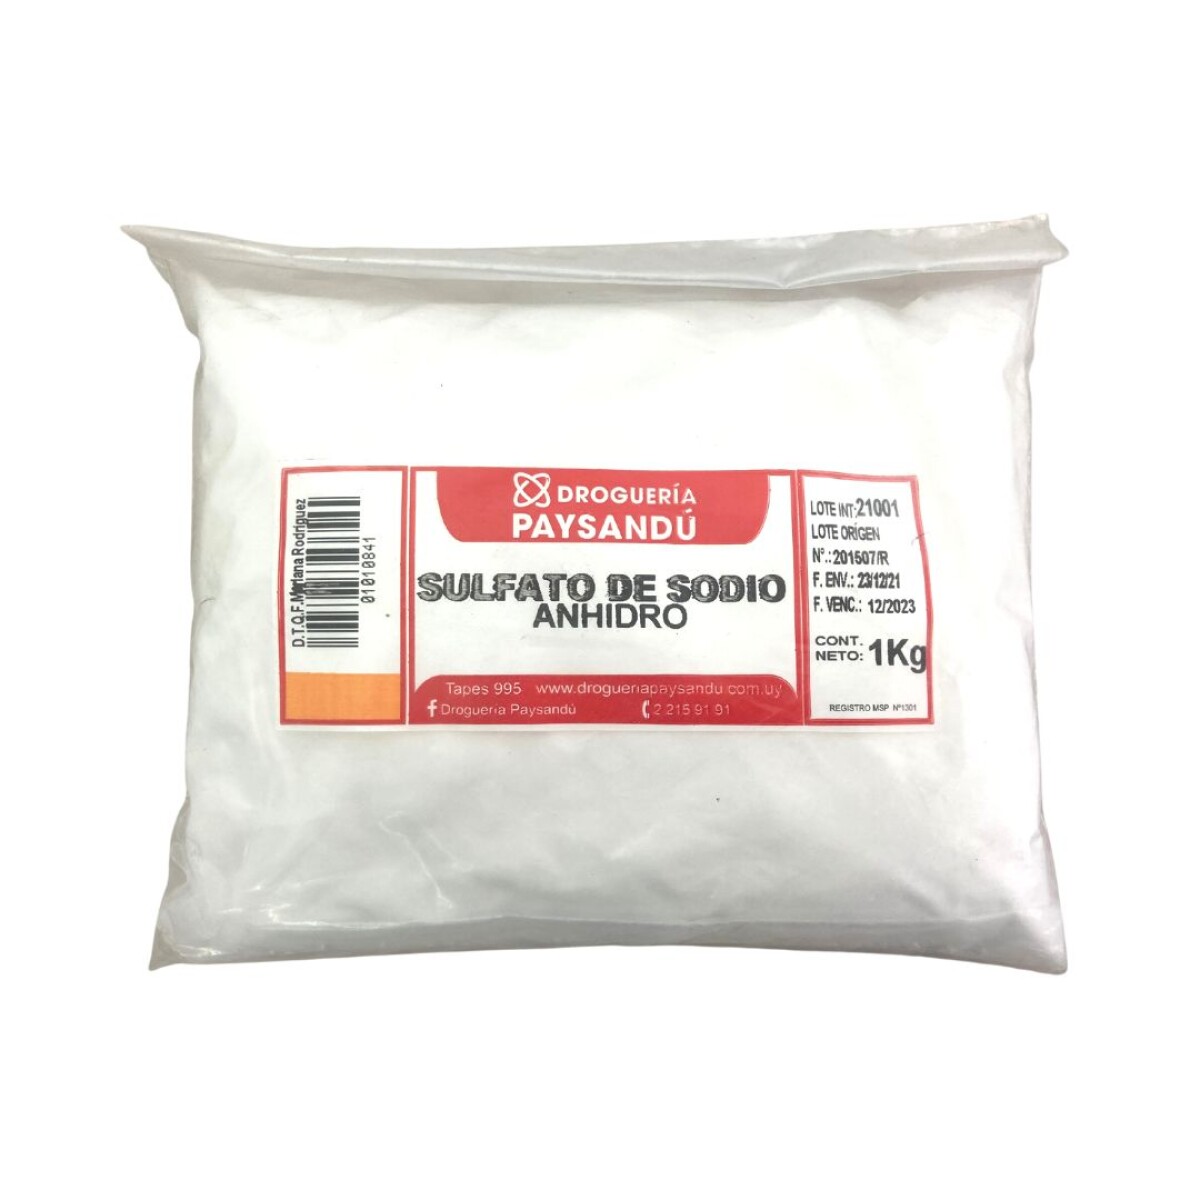 Sulfato de sodio anhidro - 1 kg 